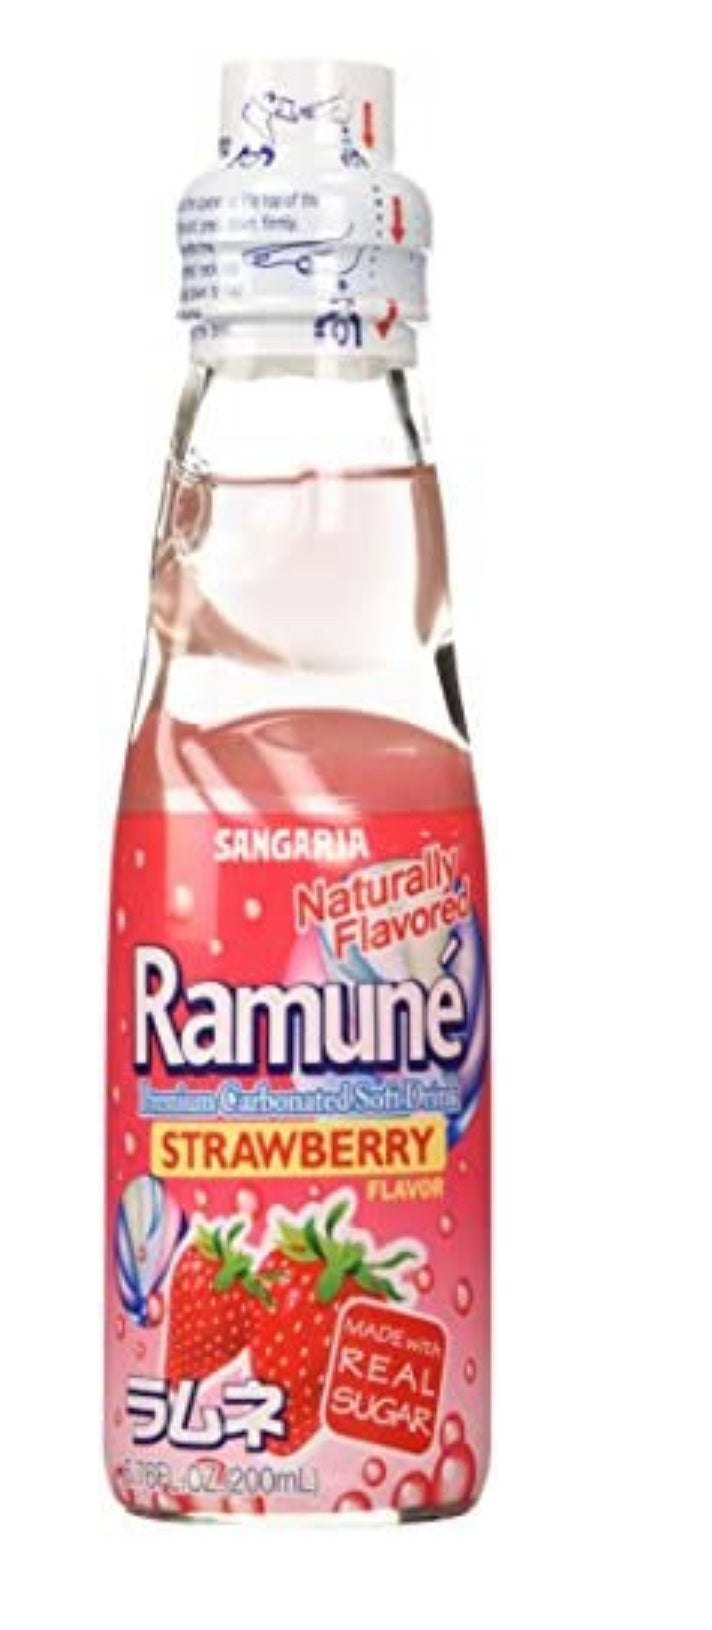 Ramune Strawberry Sangaria